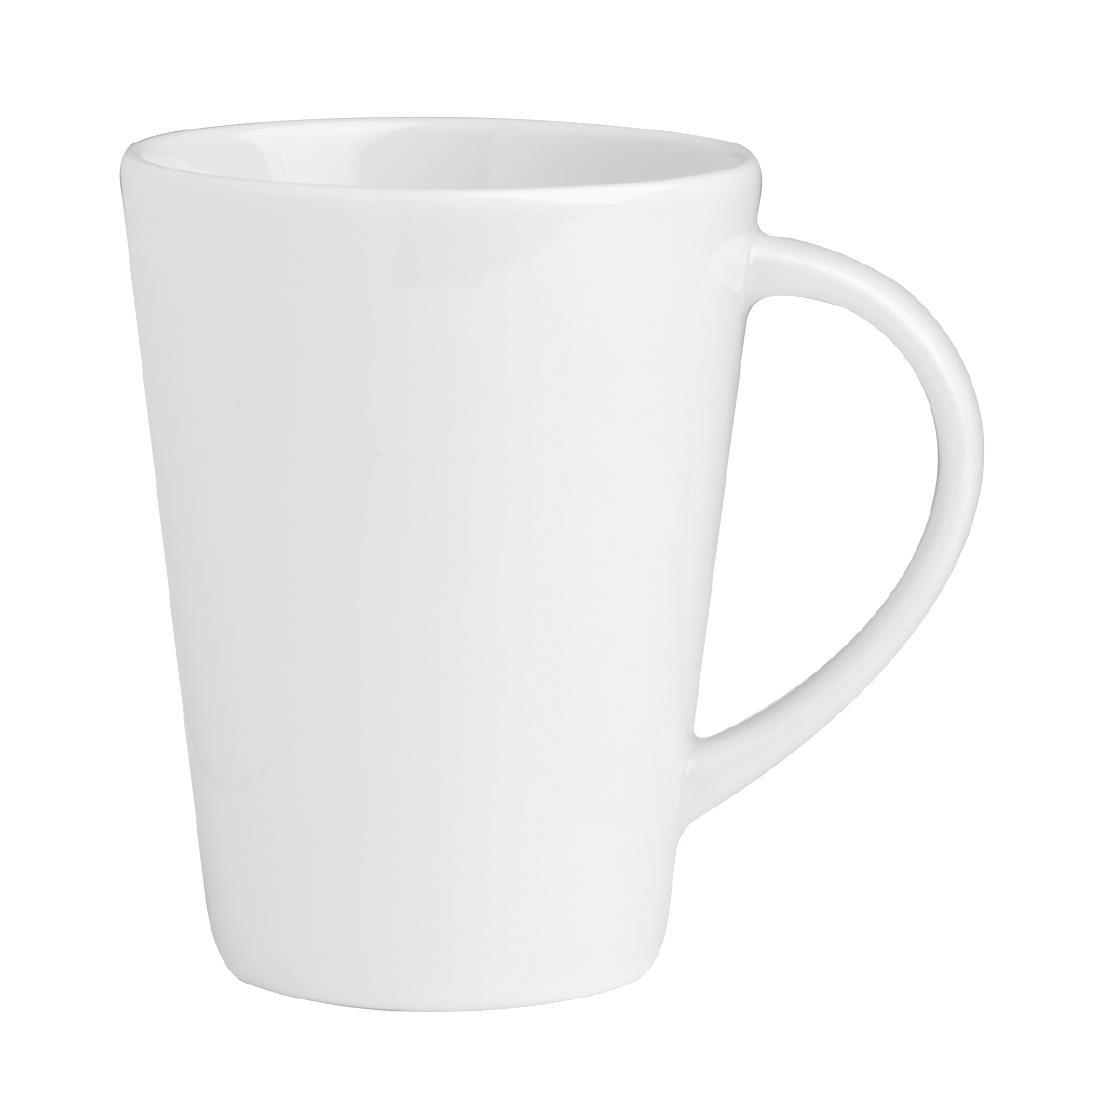 Royal Porcelain Classic White Mug 275ml (Pack of 6) - GT933  - 2